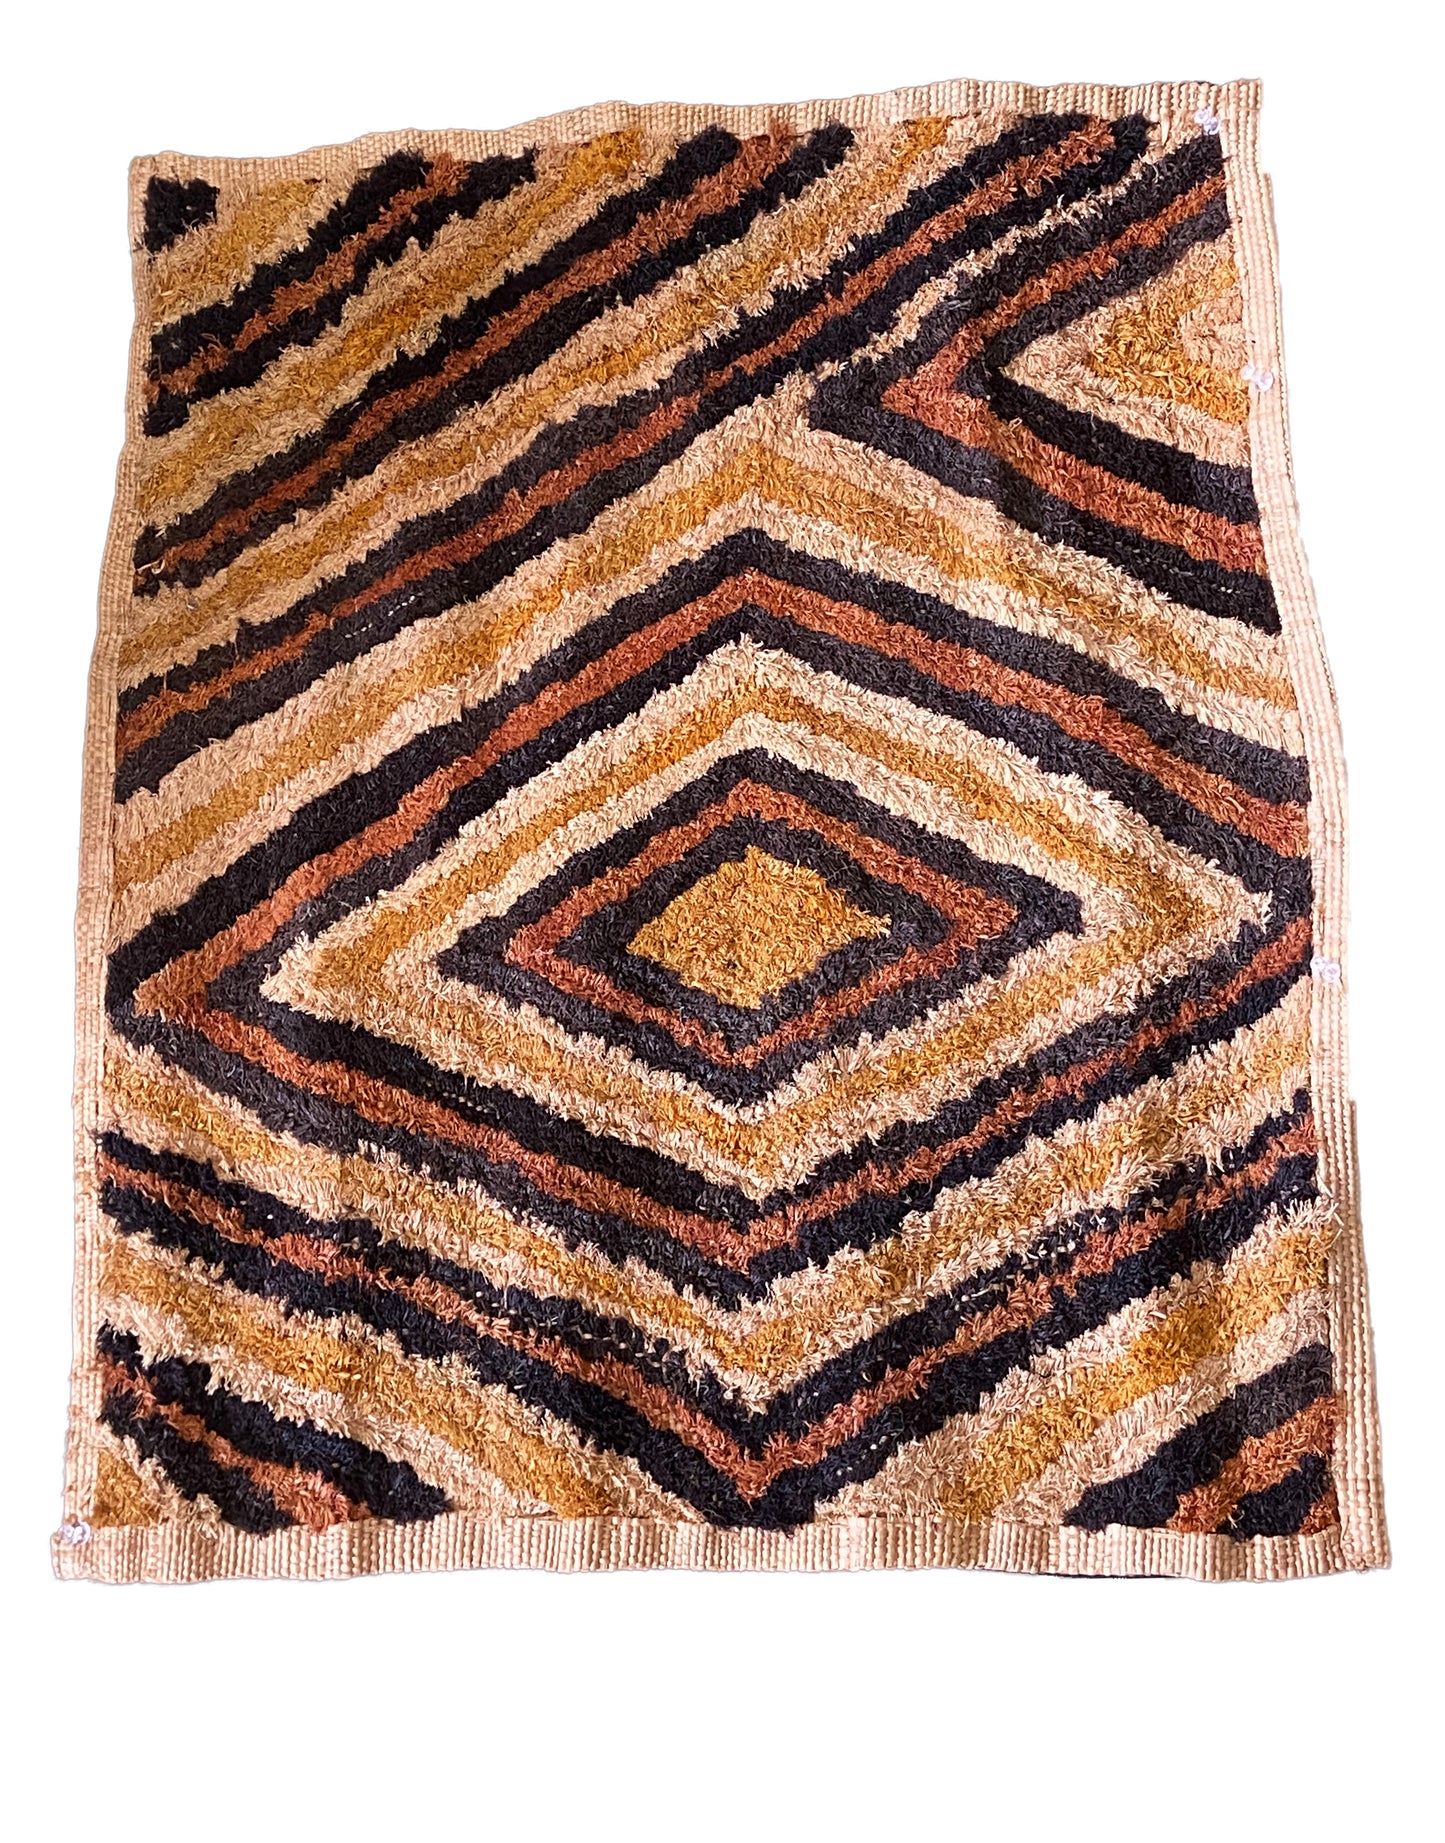 # 2036 Superb African Kuba Kasai Velvet Raffia Textile Zaire 20 "by 23.5